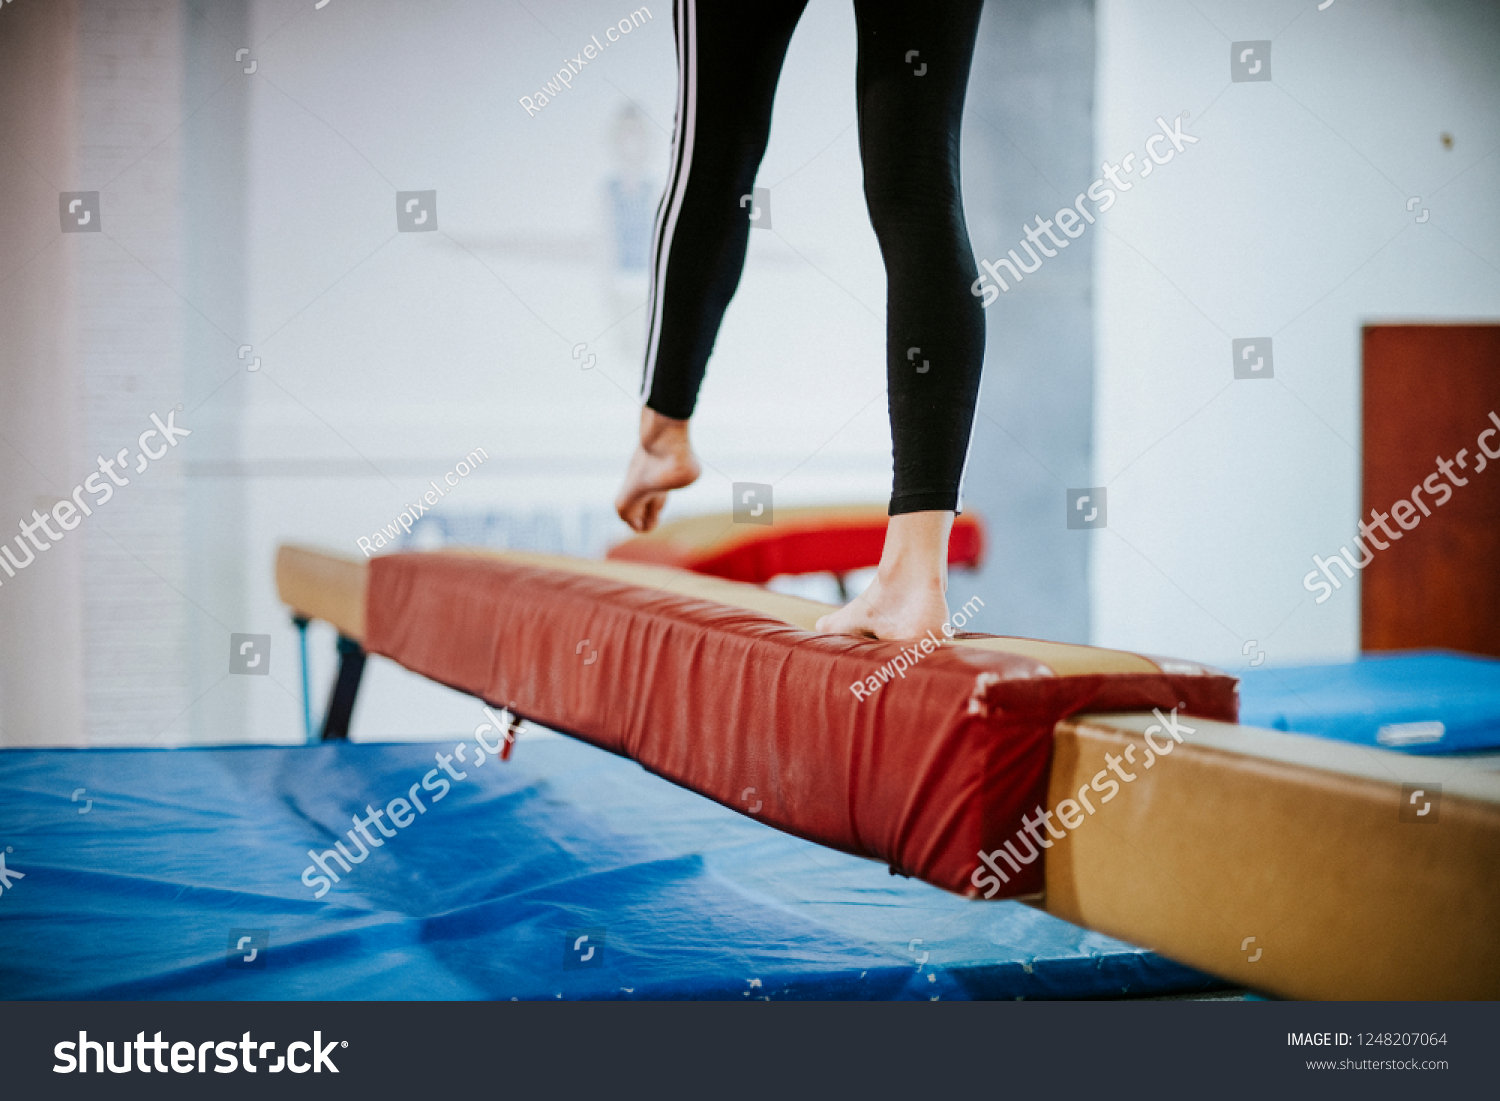 Young gymnast balancing on a balance beam #1248207064